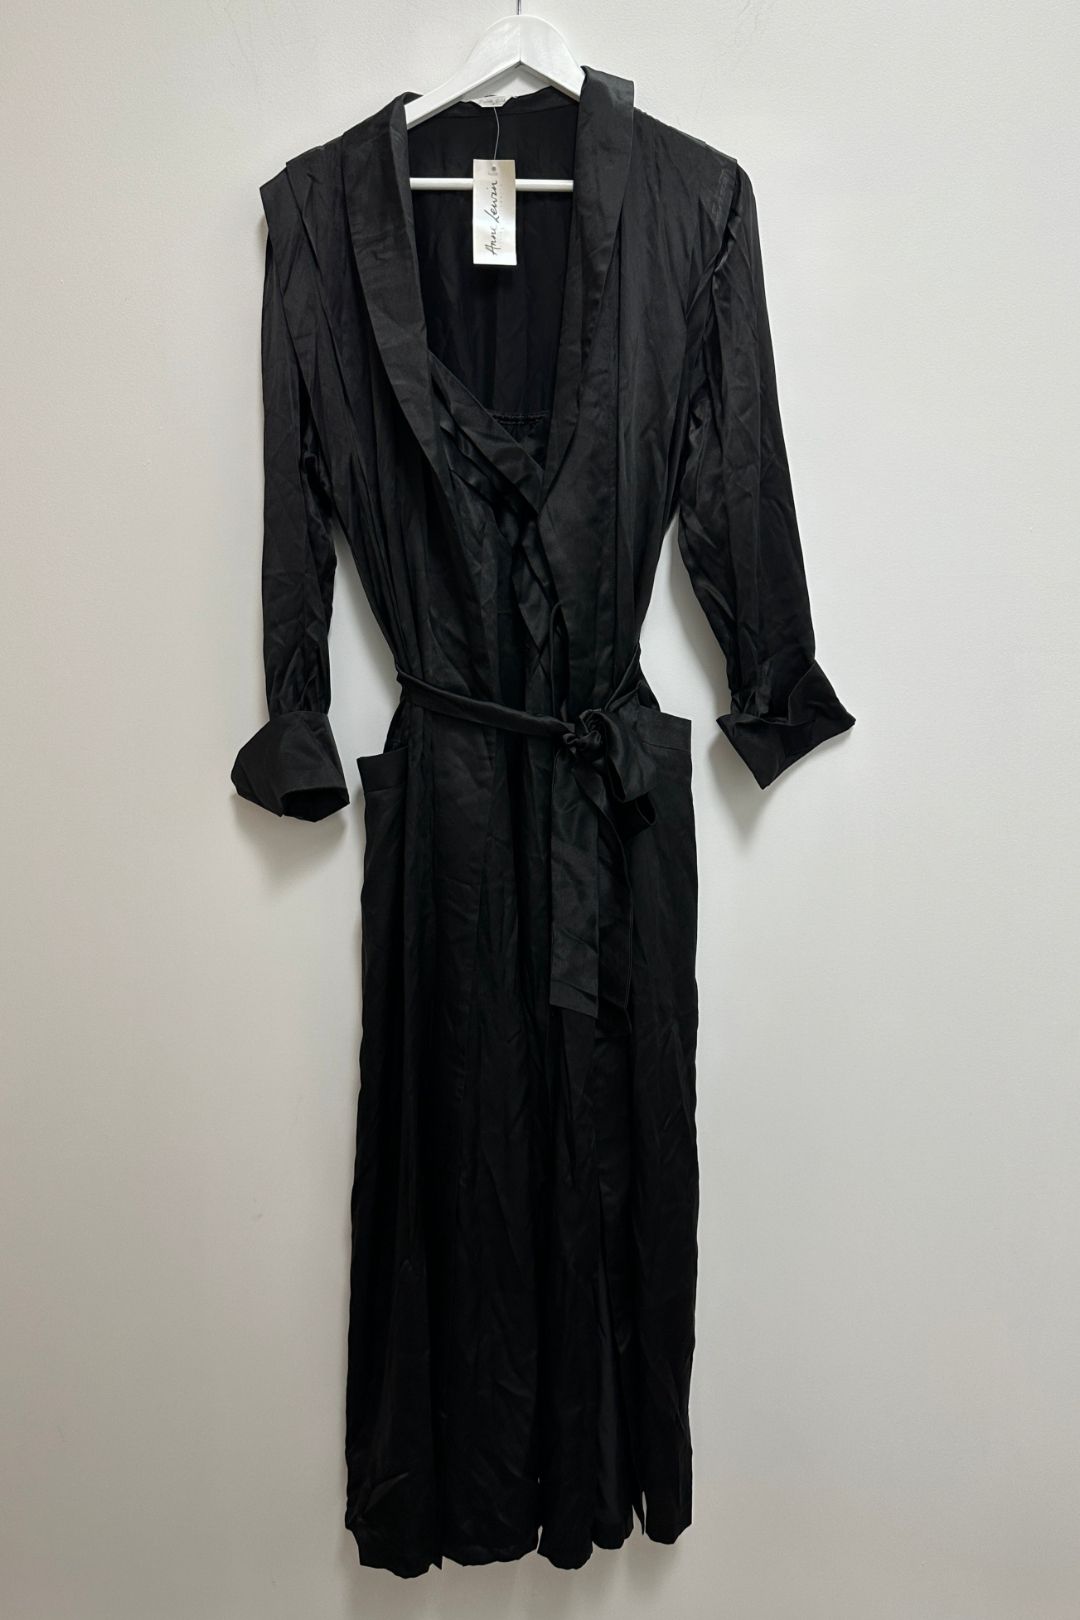 Buy Black Silk Negligee and Nightie Matching Set | Anne Lewin | GlamCorner